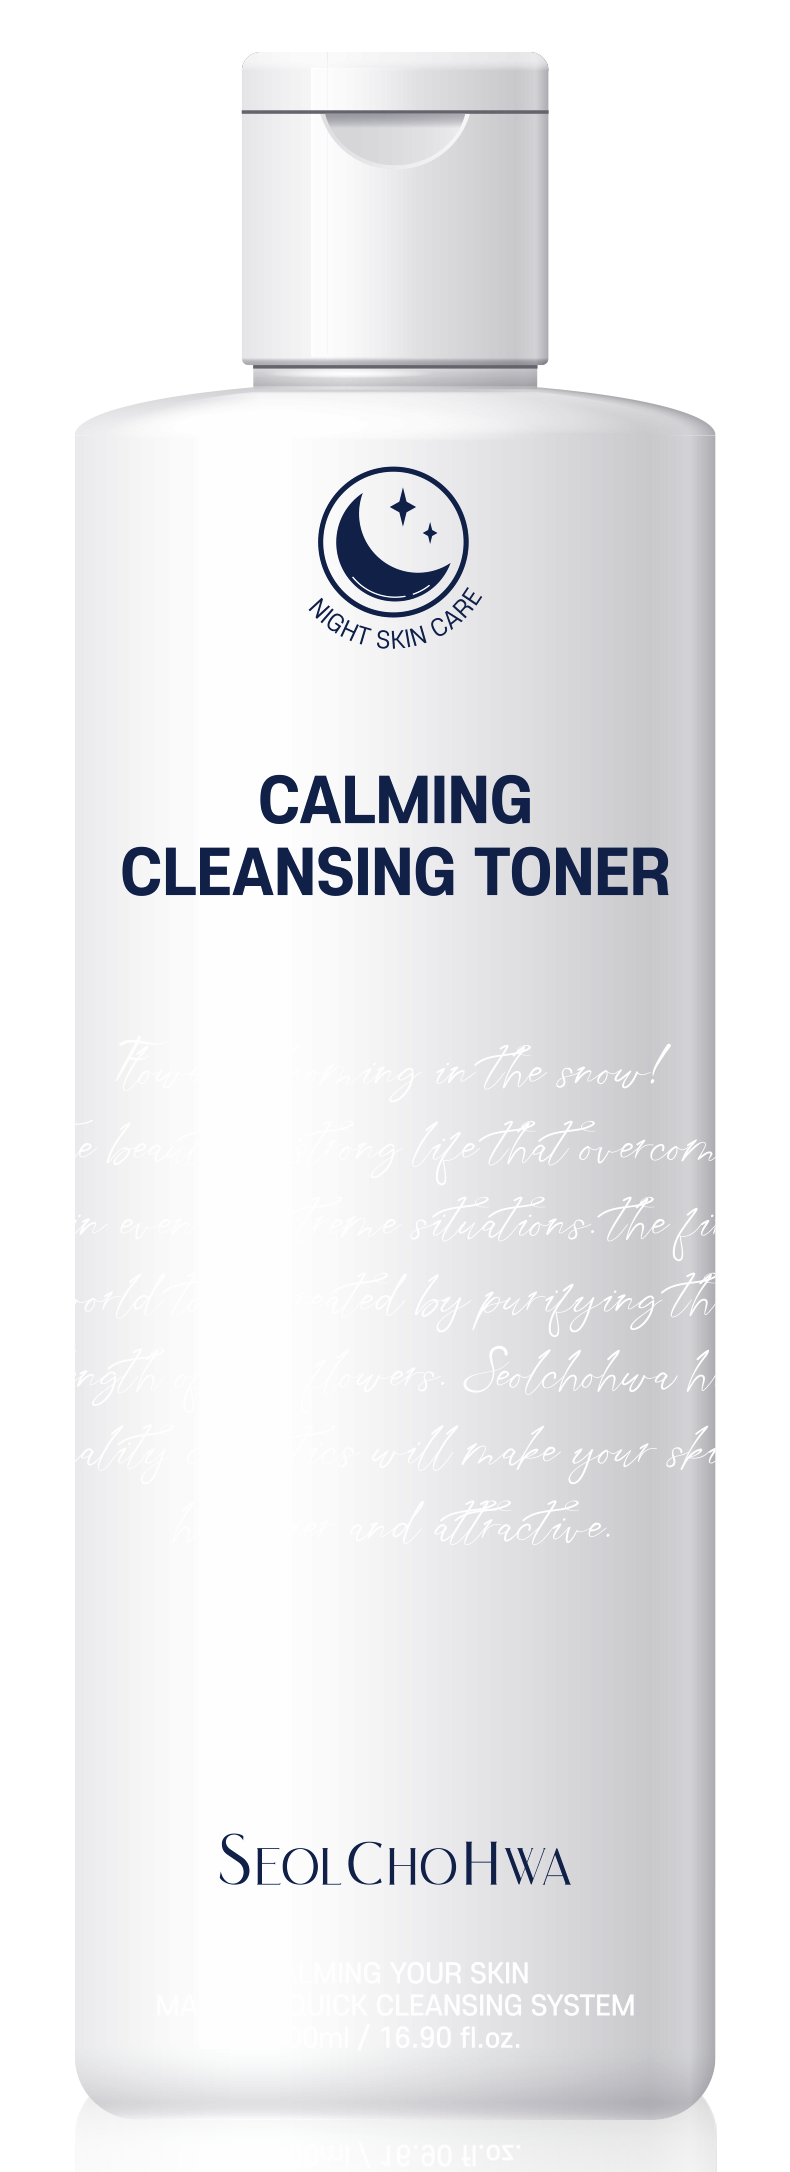 Seolchohwa Calming Cleansing Toner